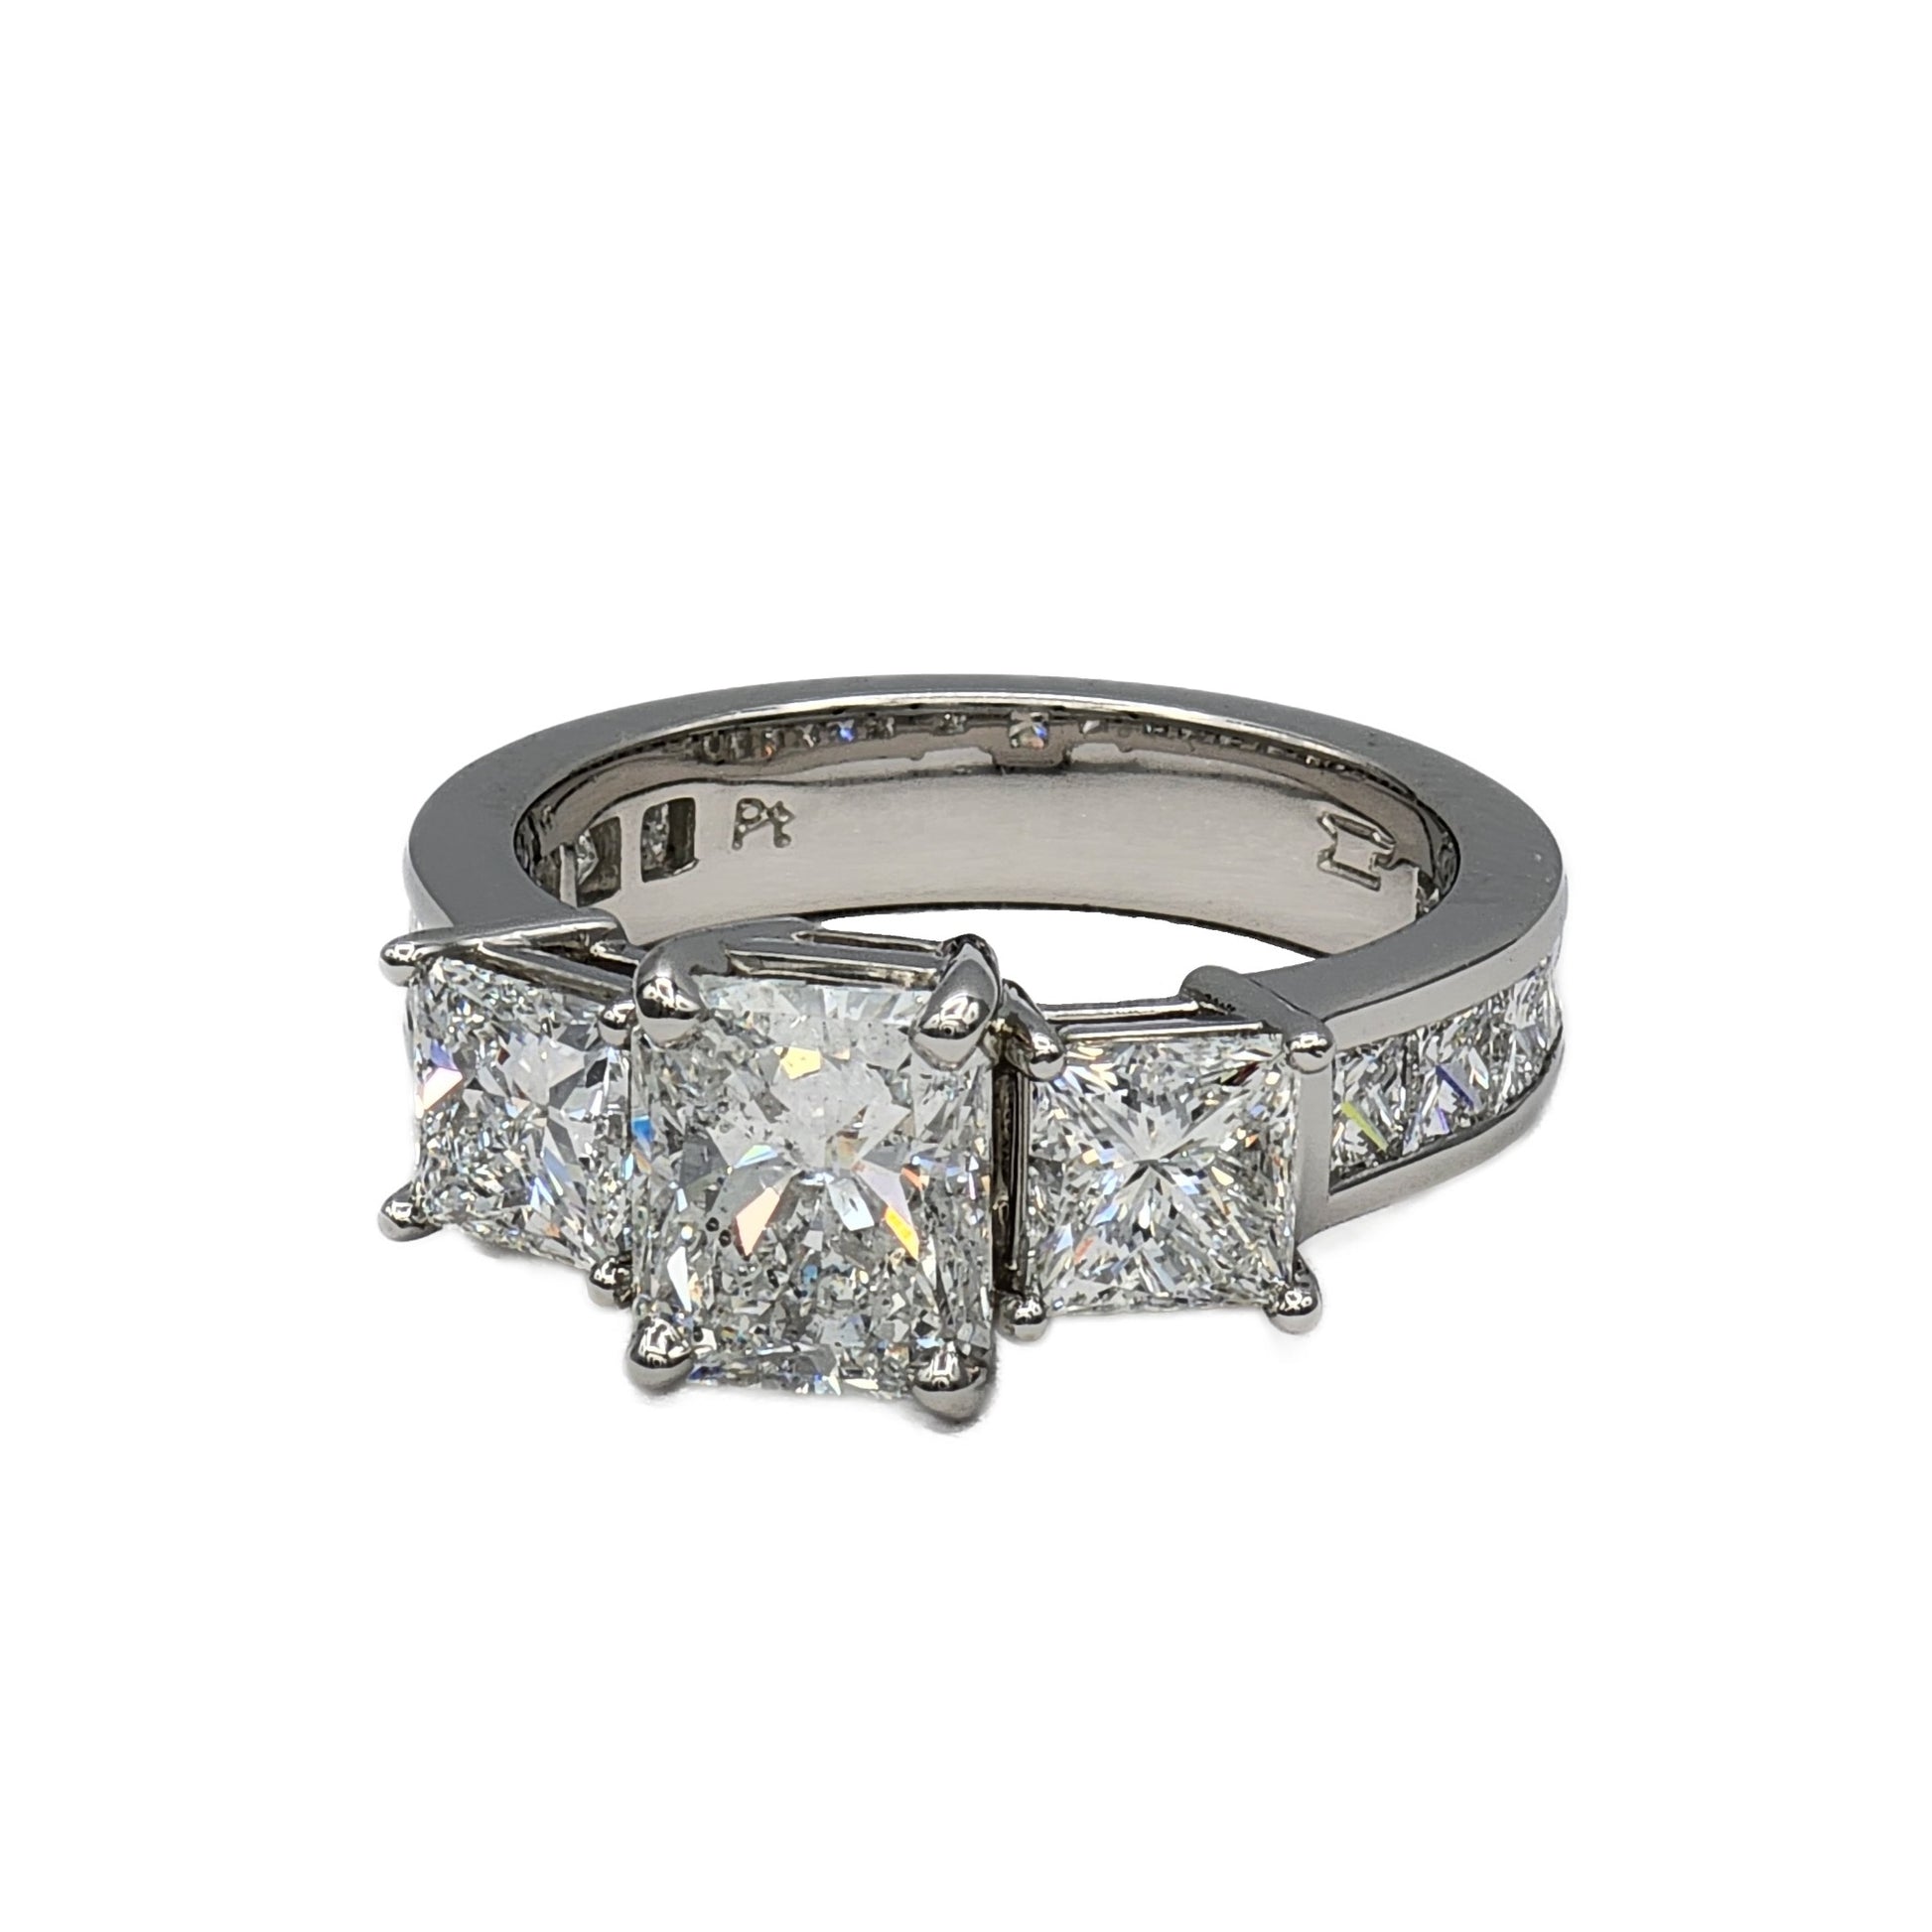 Platinum 1.78 Carat Radiant Cut Diamond Ring